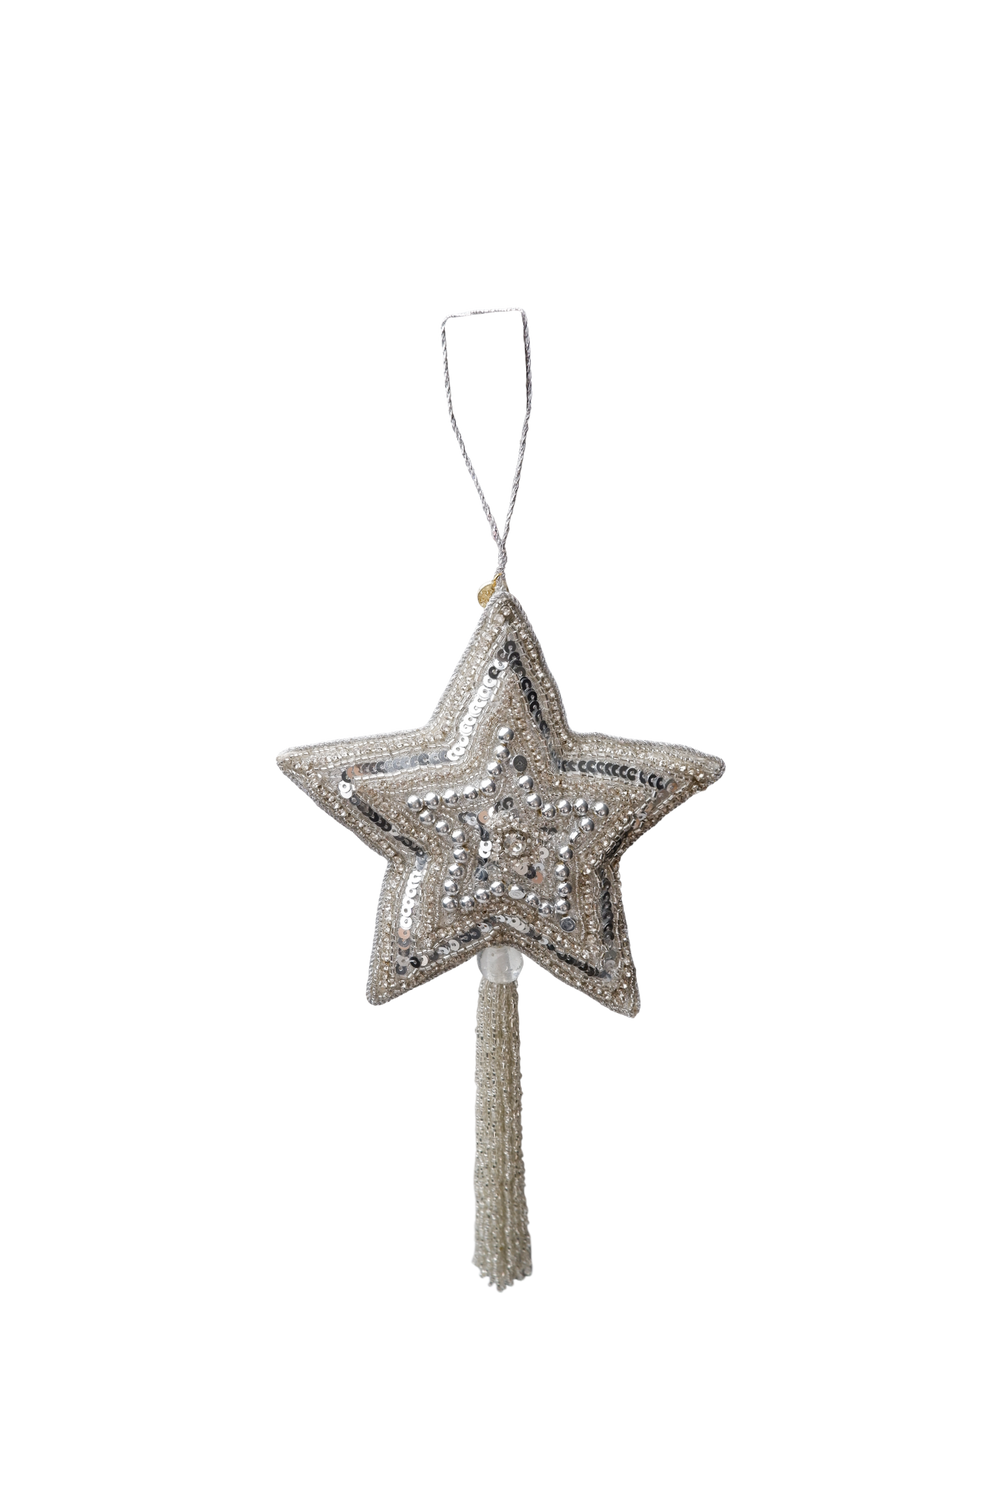 Black Colour Julepynt - BcXL Tassel Star Christmas Ornament i Sølv